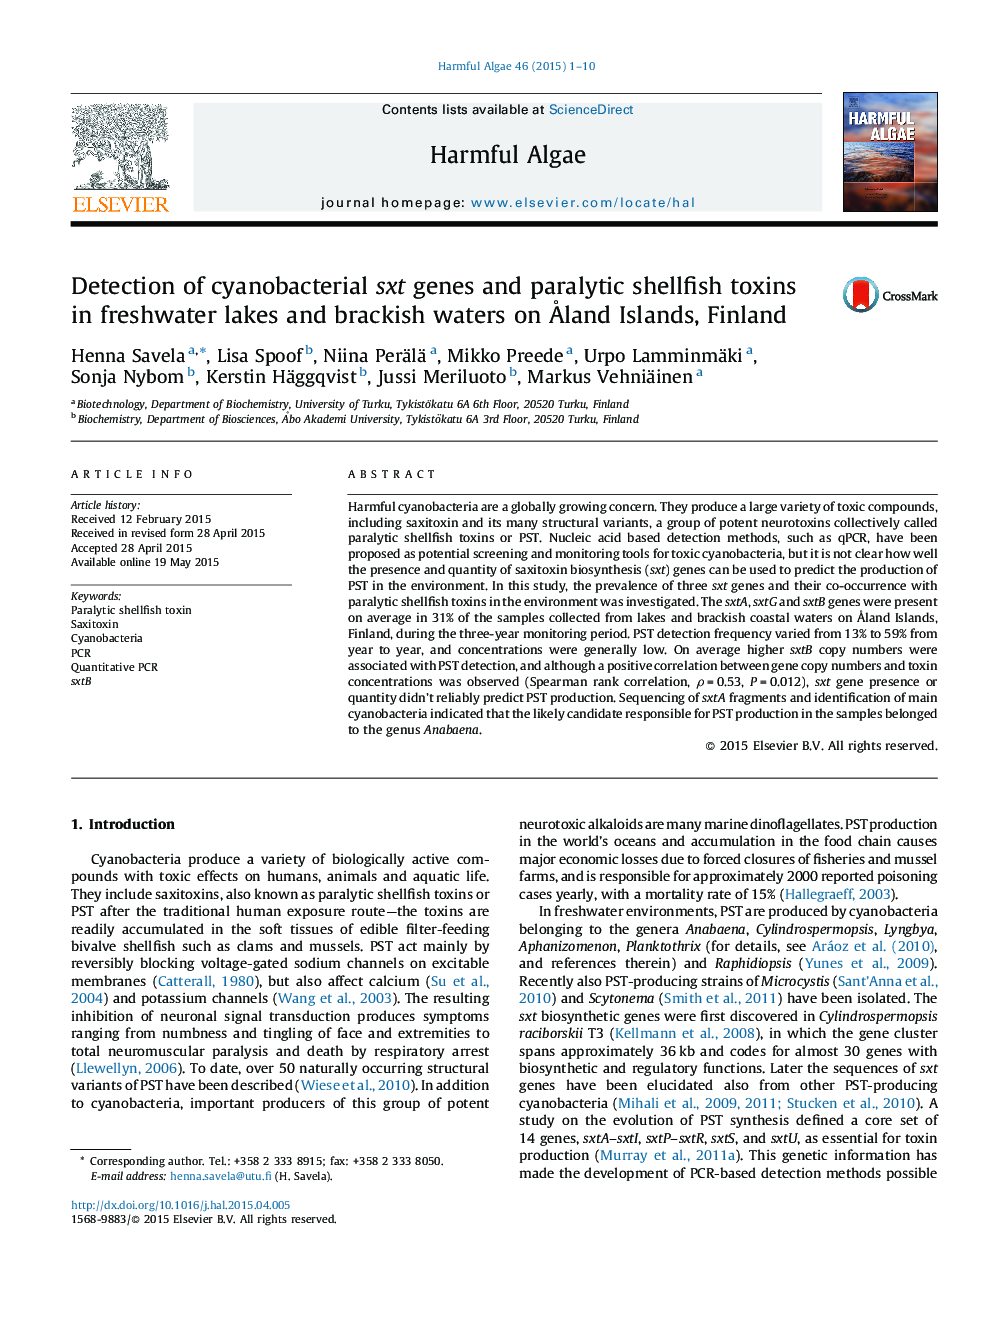 تشخیص ژنهای سندرم سینوسی باکتریایی و سموم فلوراسیون دریایی در دریاچه های آب شیرین و آب های شور در جزایر جزیره فنلاند 